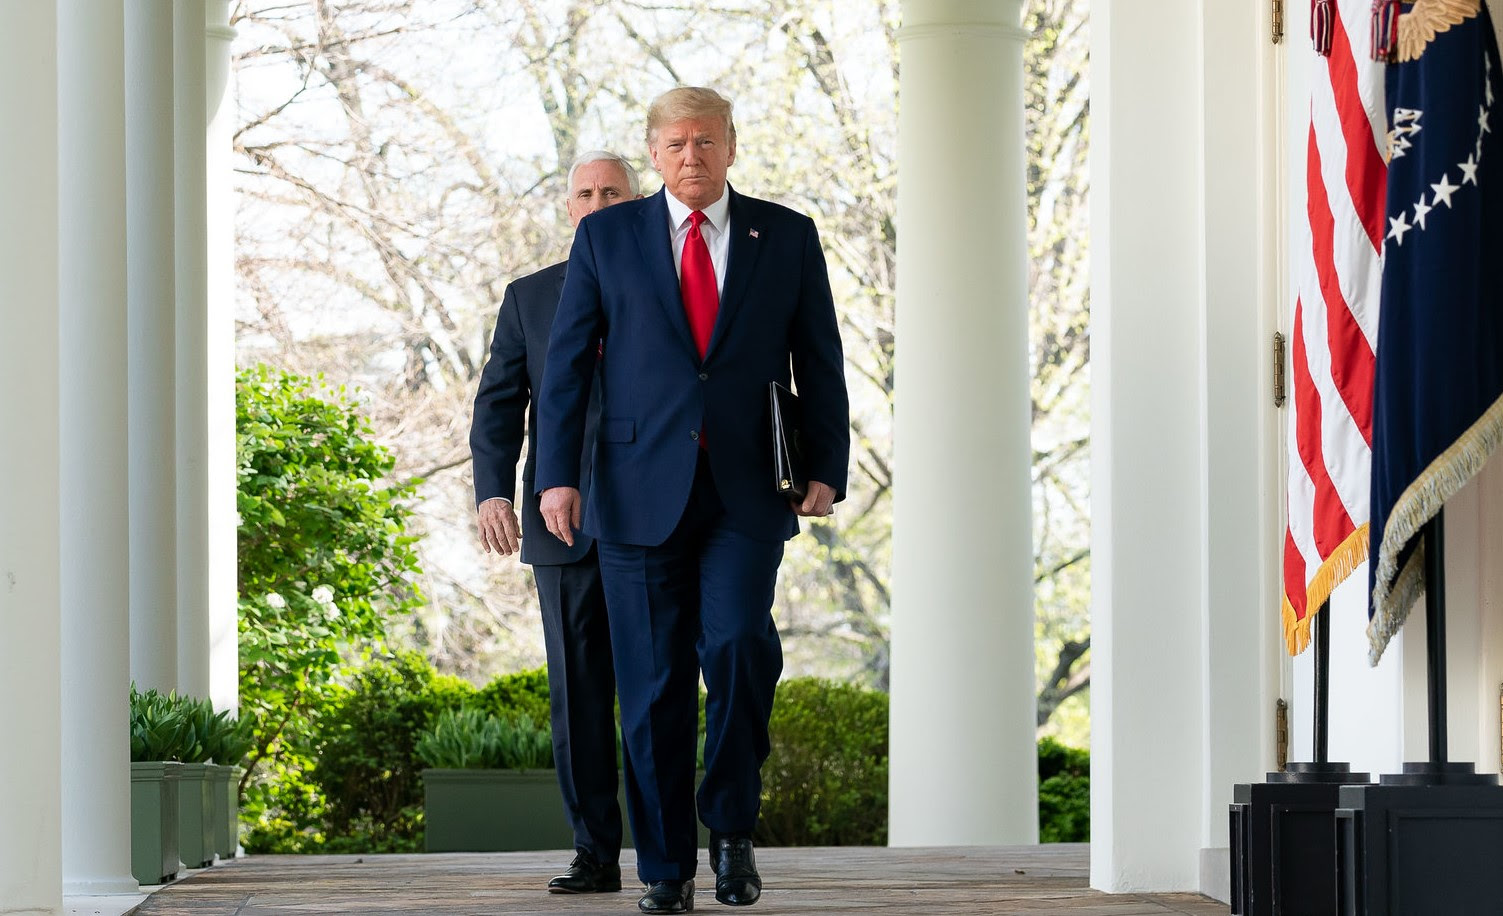 Trump camina por la Casa Blanca seguido por el vicepresidente Mike Pence. Foto: Flickr / The White House